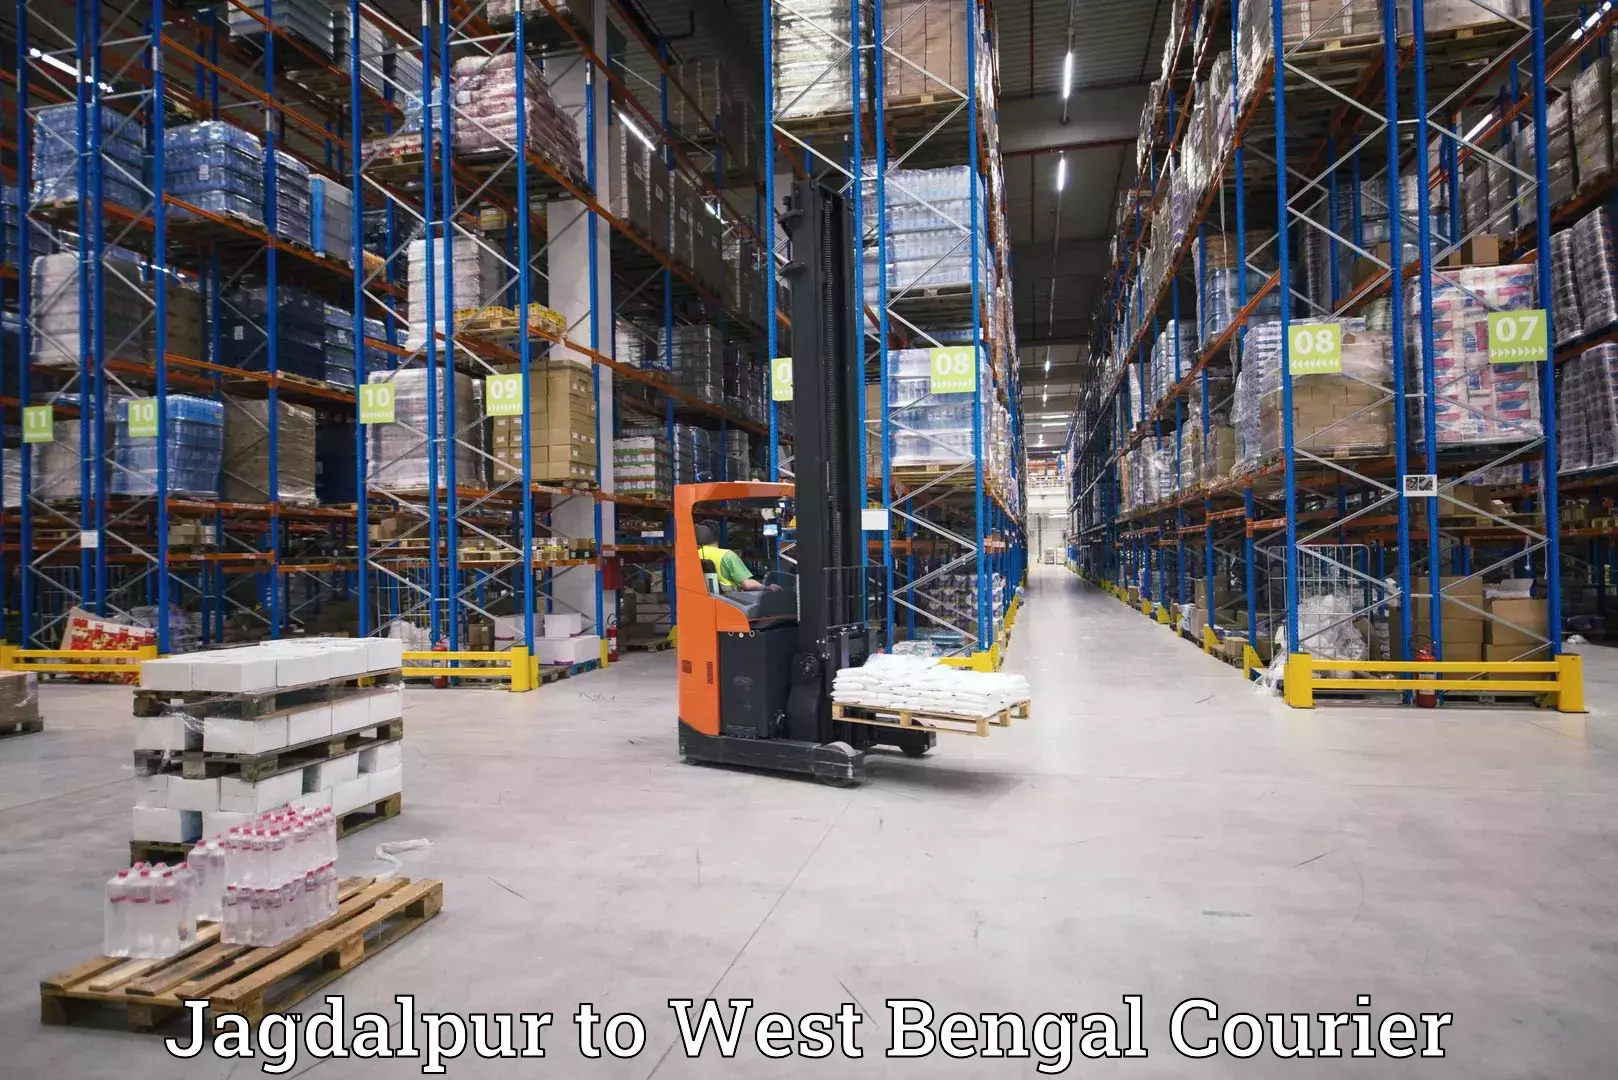 Courier service comparison Jagdalpur to NIT Durgapur